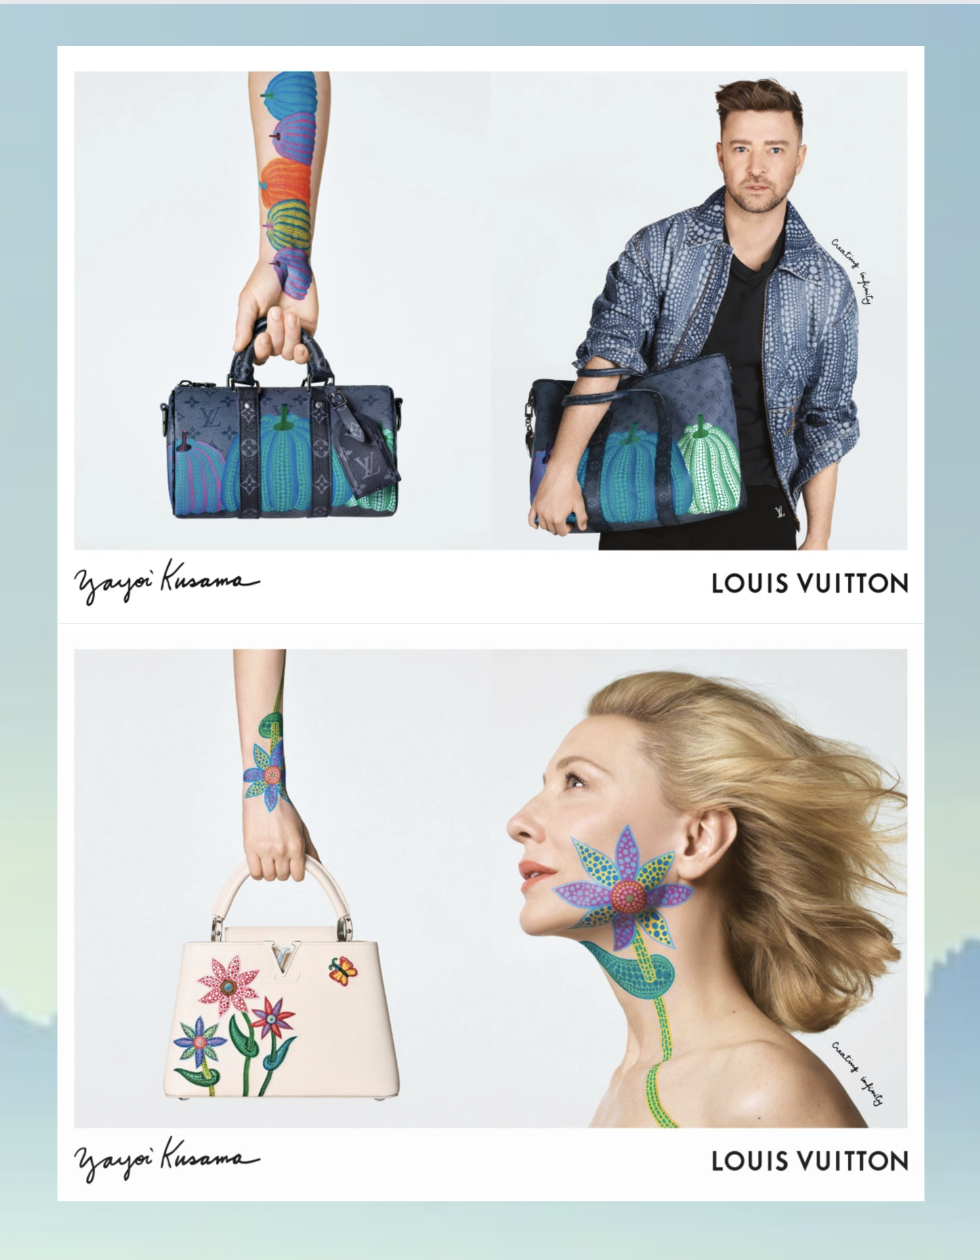 Louis Vuitton x Yayoi Kusama Taps Cate Blanchett & Justin Timberlake + 4